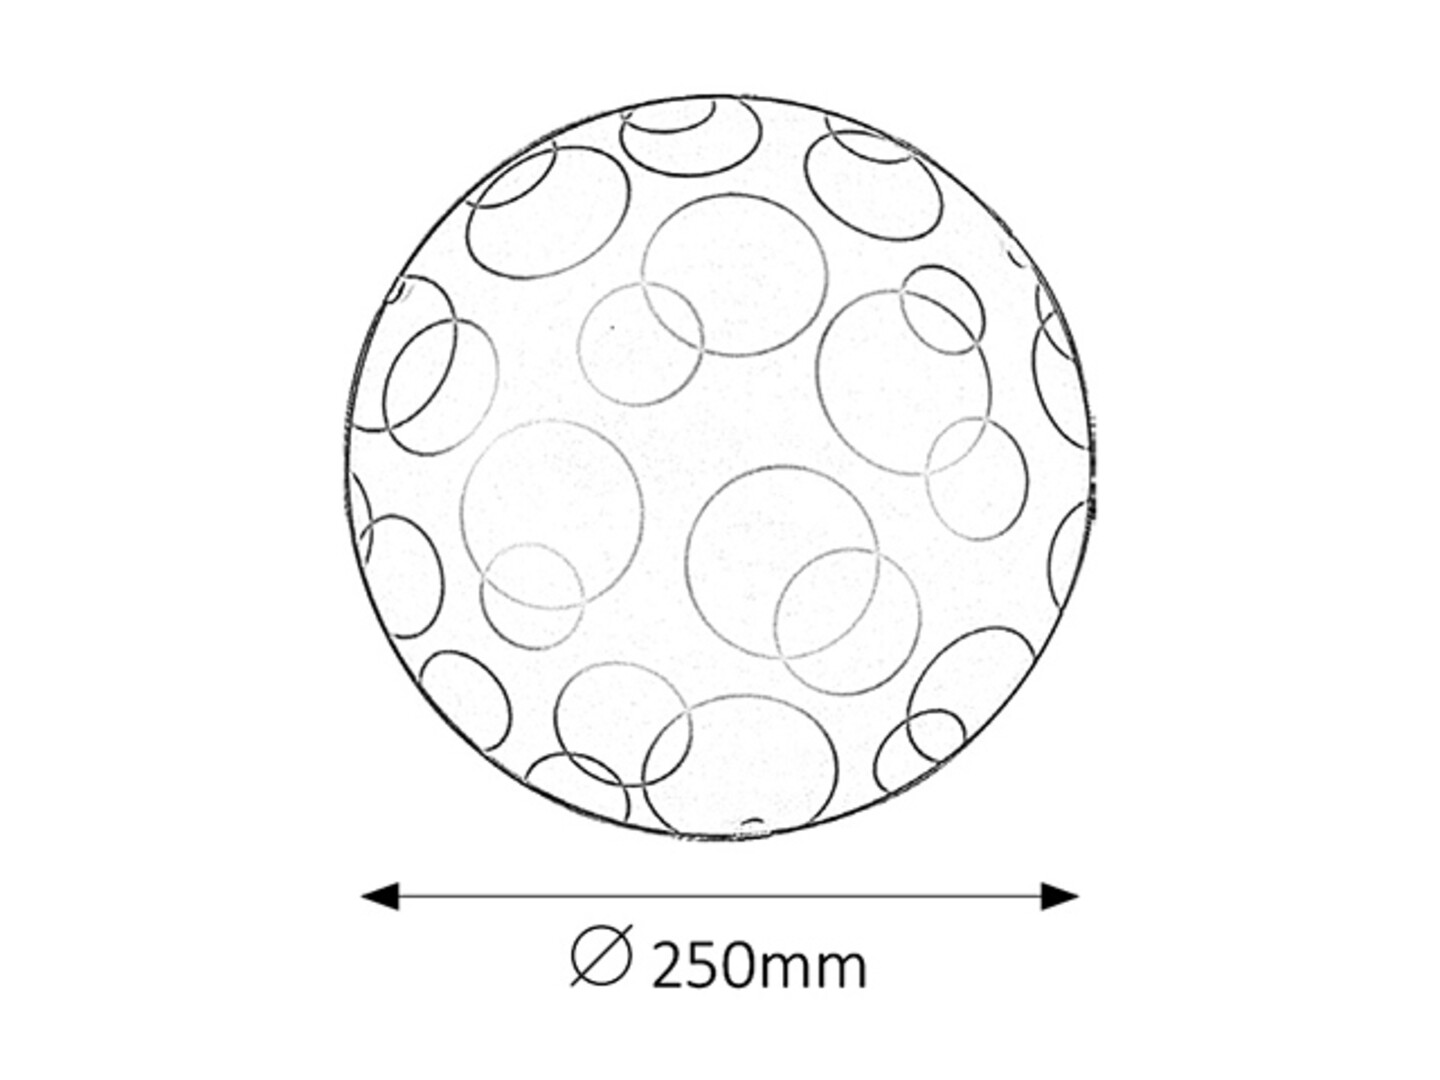 Deckenleuchte 1 Spot Ada 1843, E27, Metall-Kunststoff, weiß, rund, Standard, ø250mm